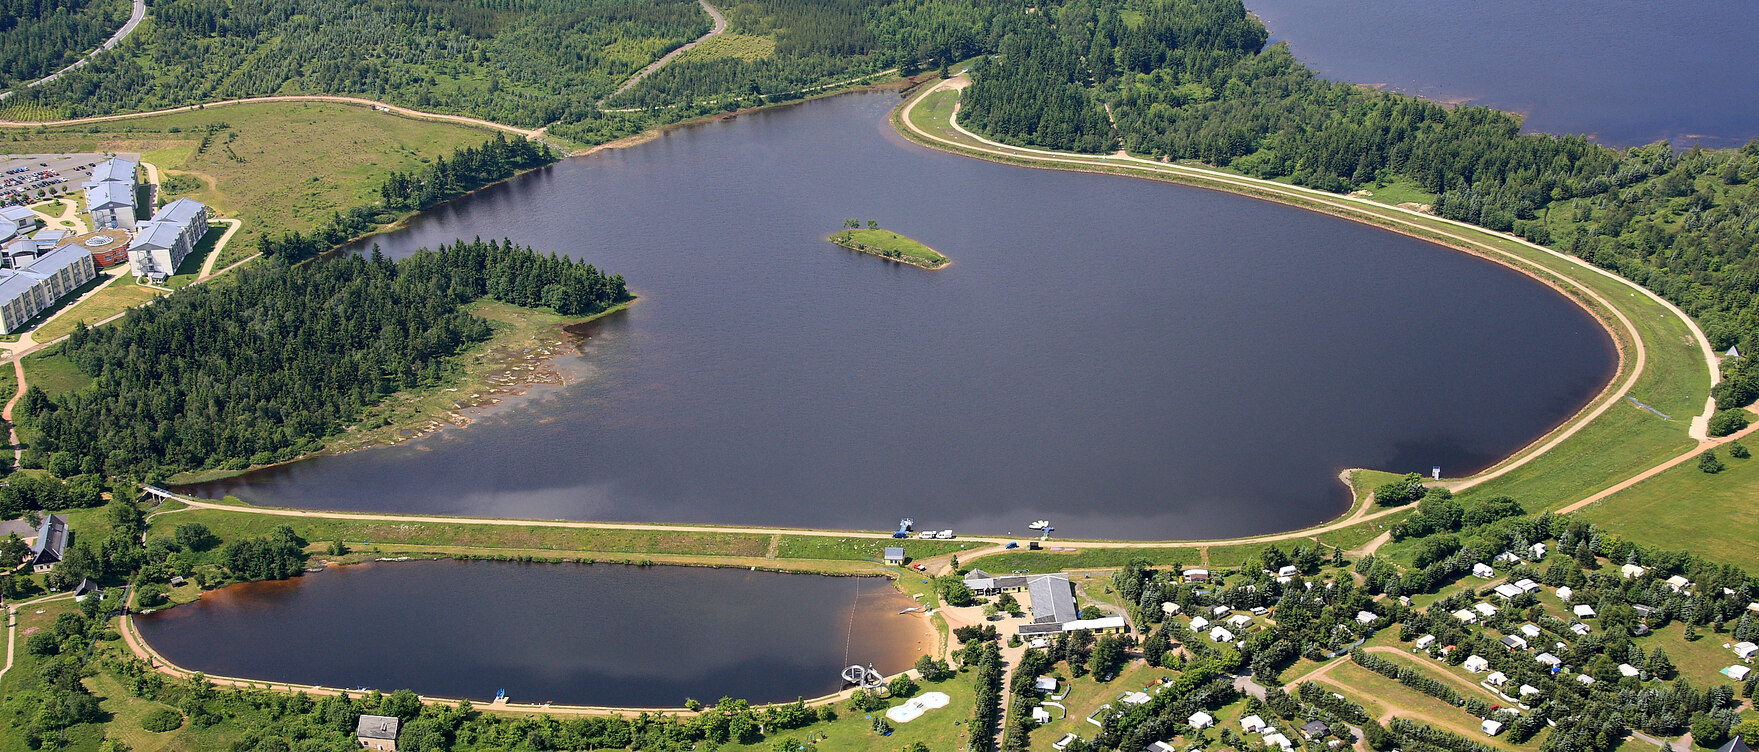 Luftbild dreier nebeneinander liegender Seen. Im Vordergrund ein Campingplatz und rings um die Seen viel Grün.